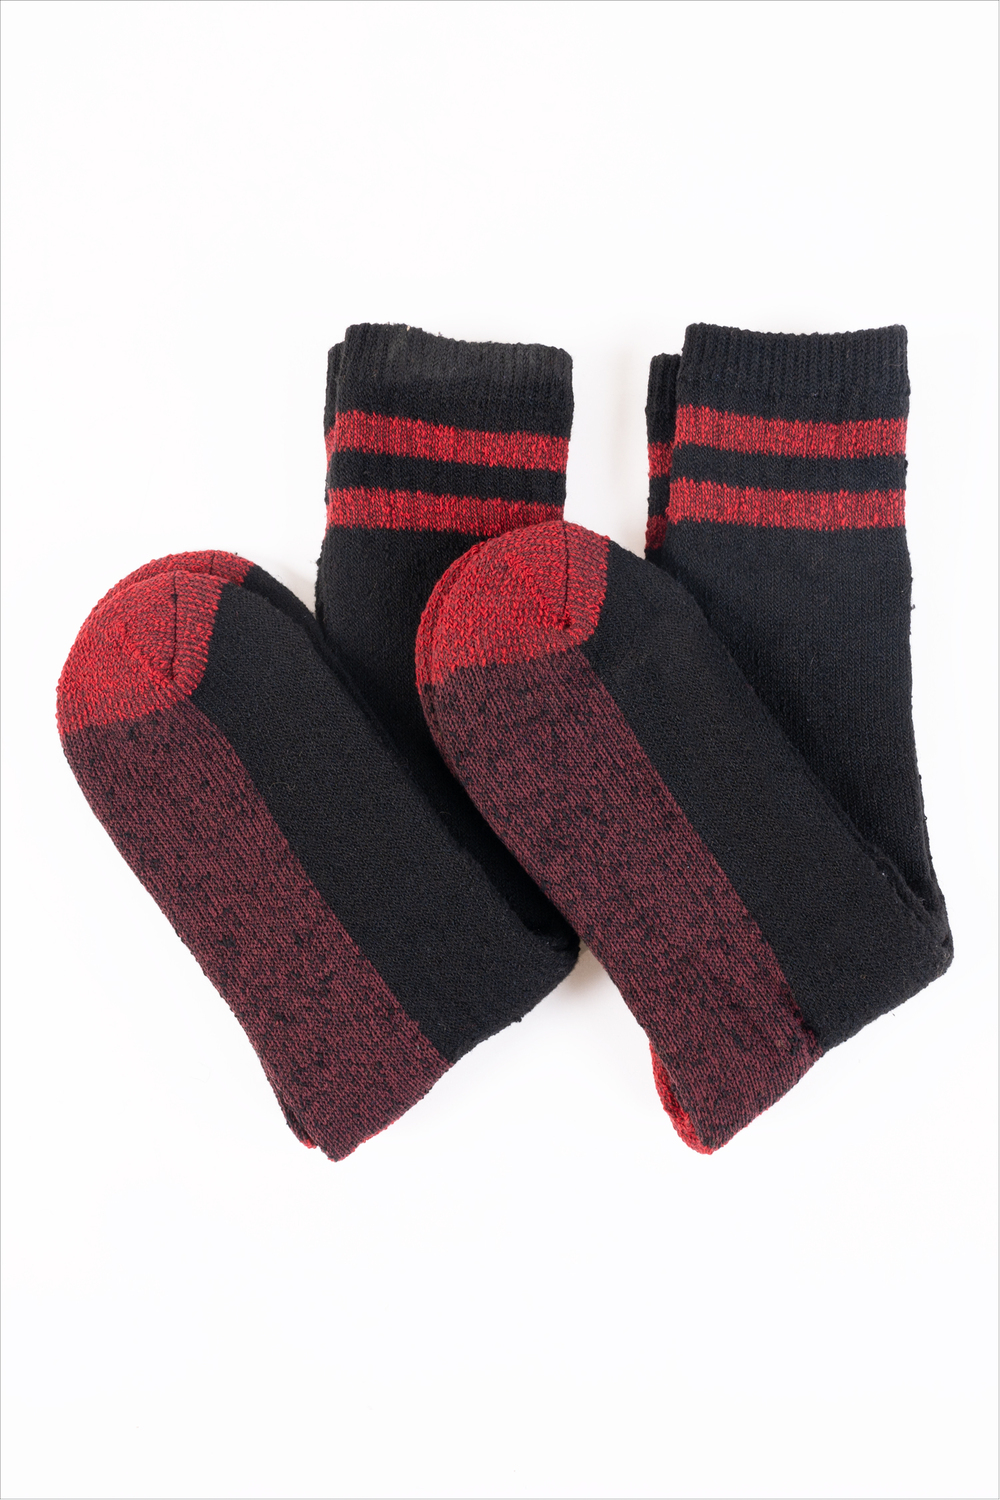 Brn bernardi cz10nr43 chaussettes hiver merino noir rouge taille l xl